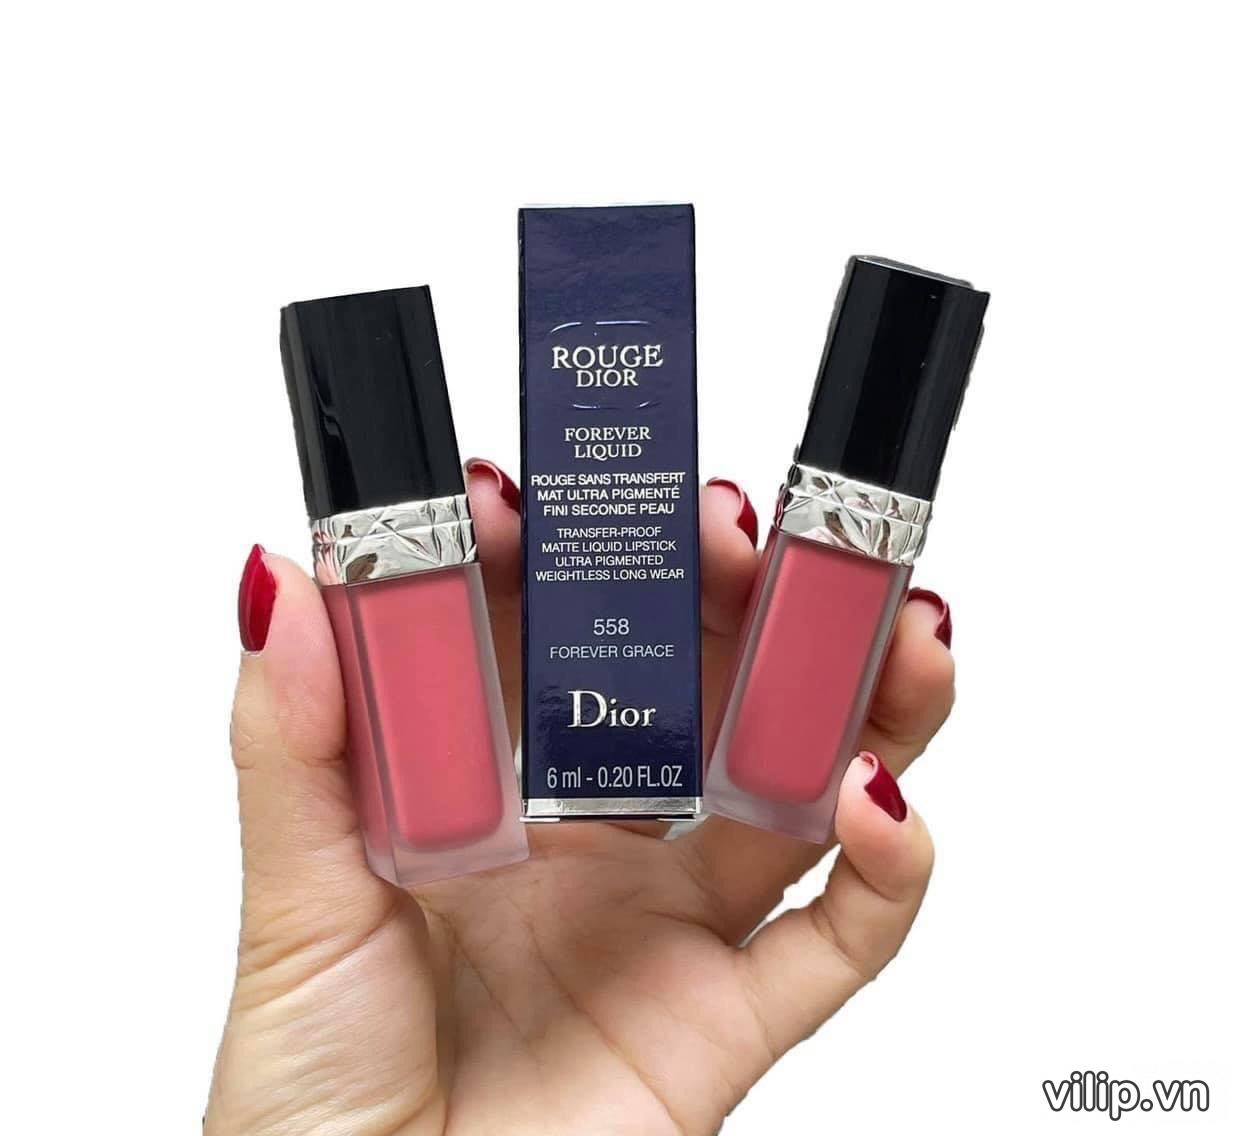 Son Kem Dior Rouge Dior Forever Liquid 558 Forever Grace Mau hong hoa kho 23